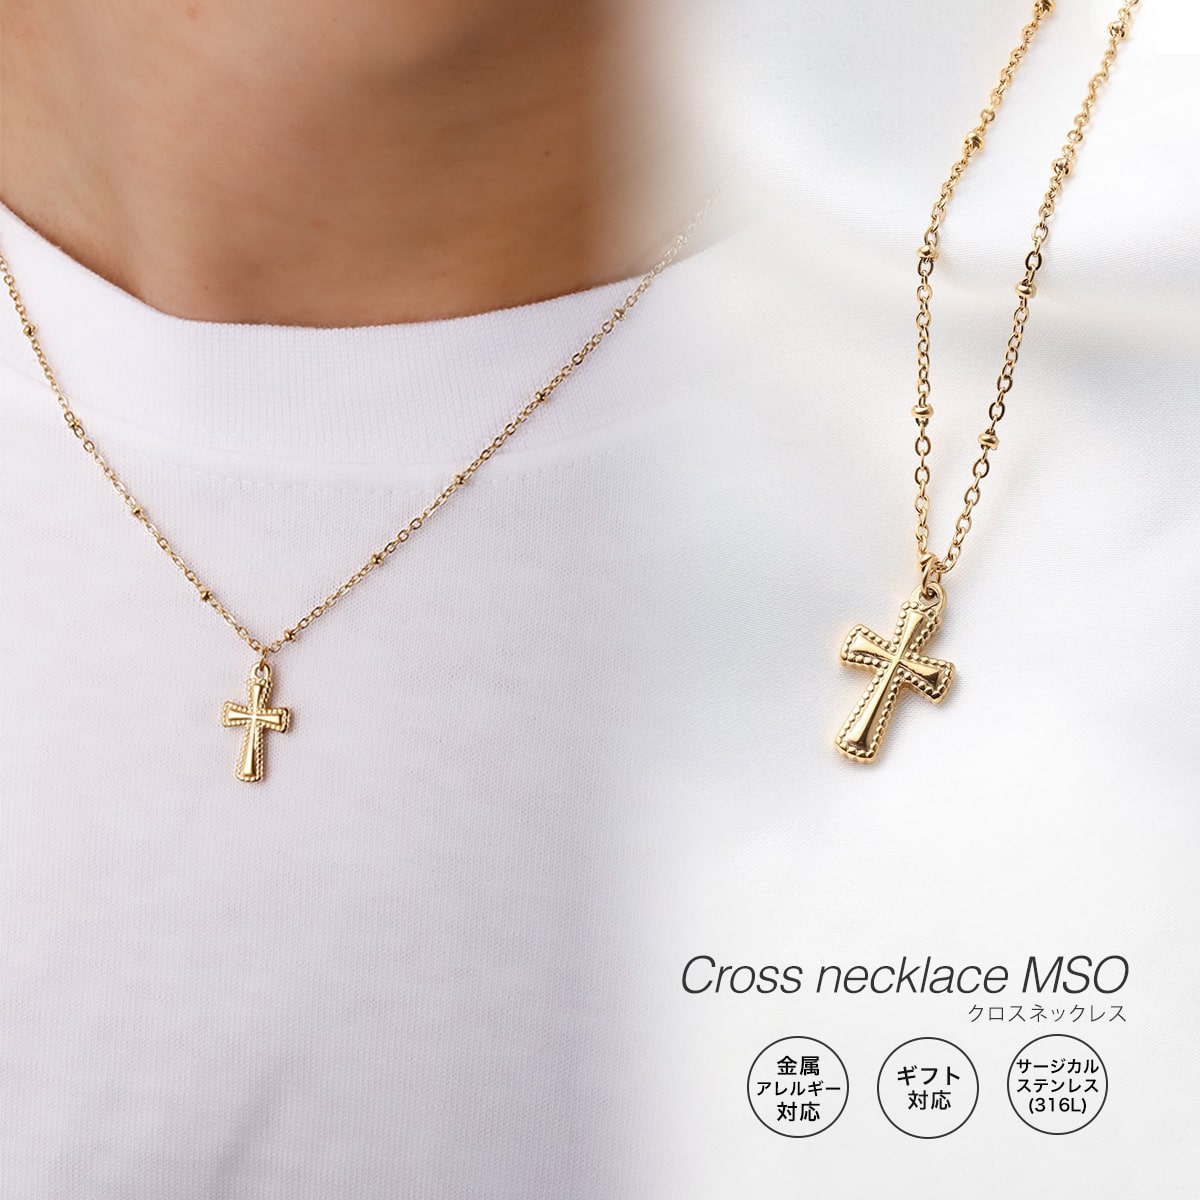 ネックレス クロス 十字架 アクセサリー 金属アレルギー 錆びない ゴールド シンプル メンズ お揃い 可愛い 華奢 細身 GLUCK Cross necklace MSO